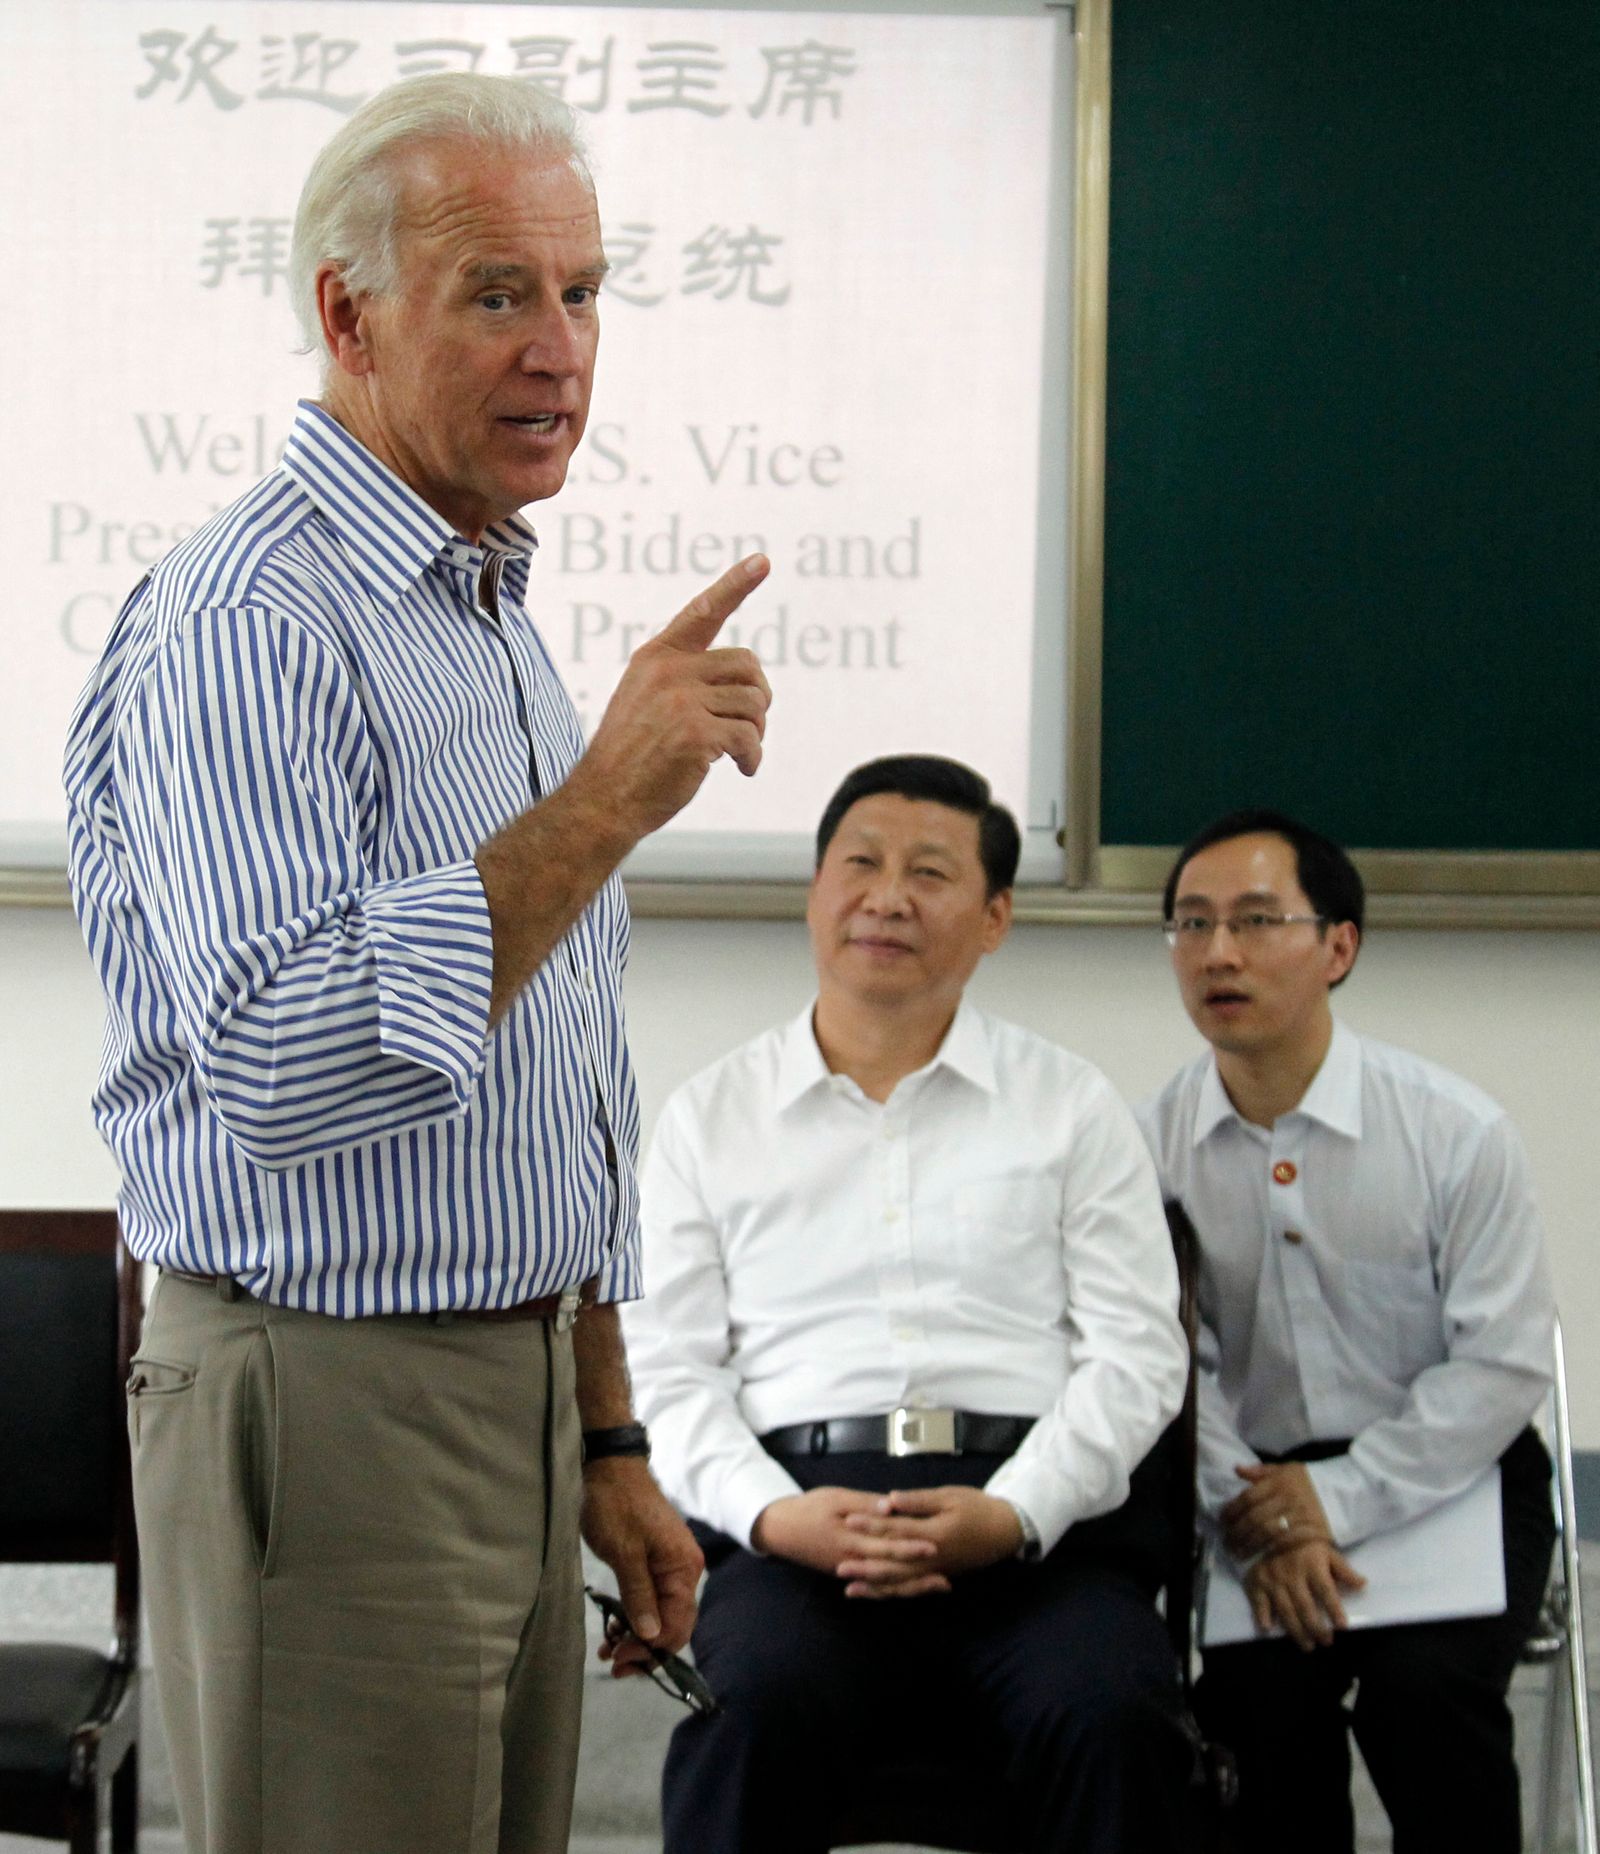 الرئيس الصيني شي جين بينج، حين كان نائباً للرئيس، يستمع إلى نظيره الأميركي جو بايدن، وكان نائباً للرئيس، خلال تحدثه إلى طلاب في مدرسة ثانوية بإقليم سيتشوان في الصين - 21 أغسطس 2011 - AFP